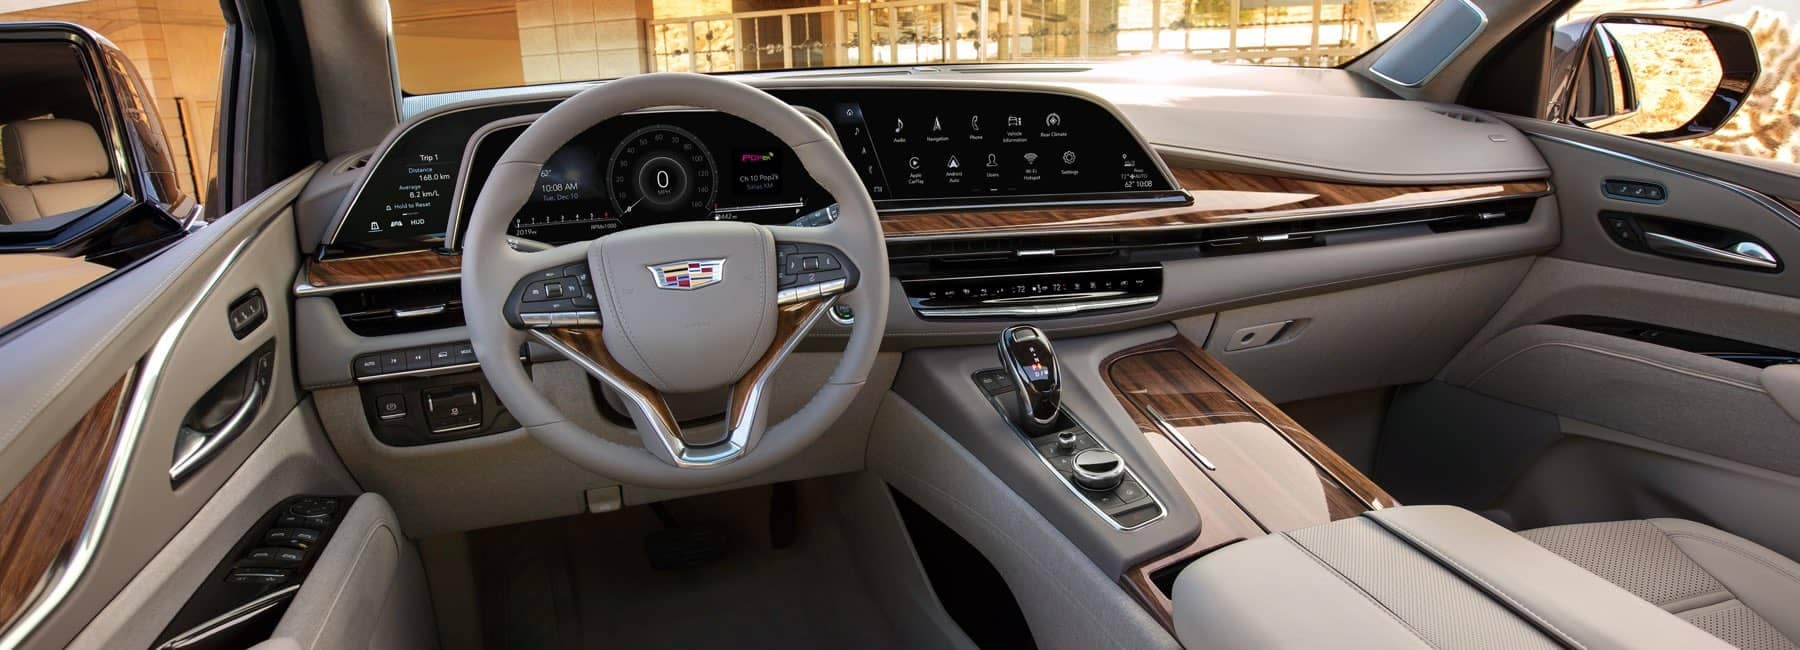 2021 Cadillac Escalade front interior cabin